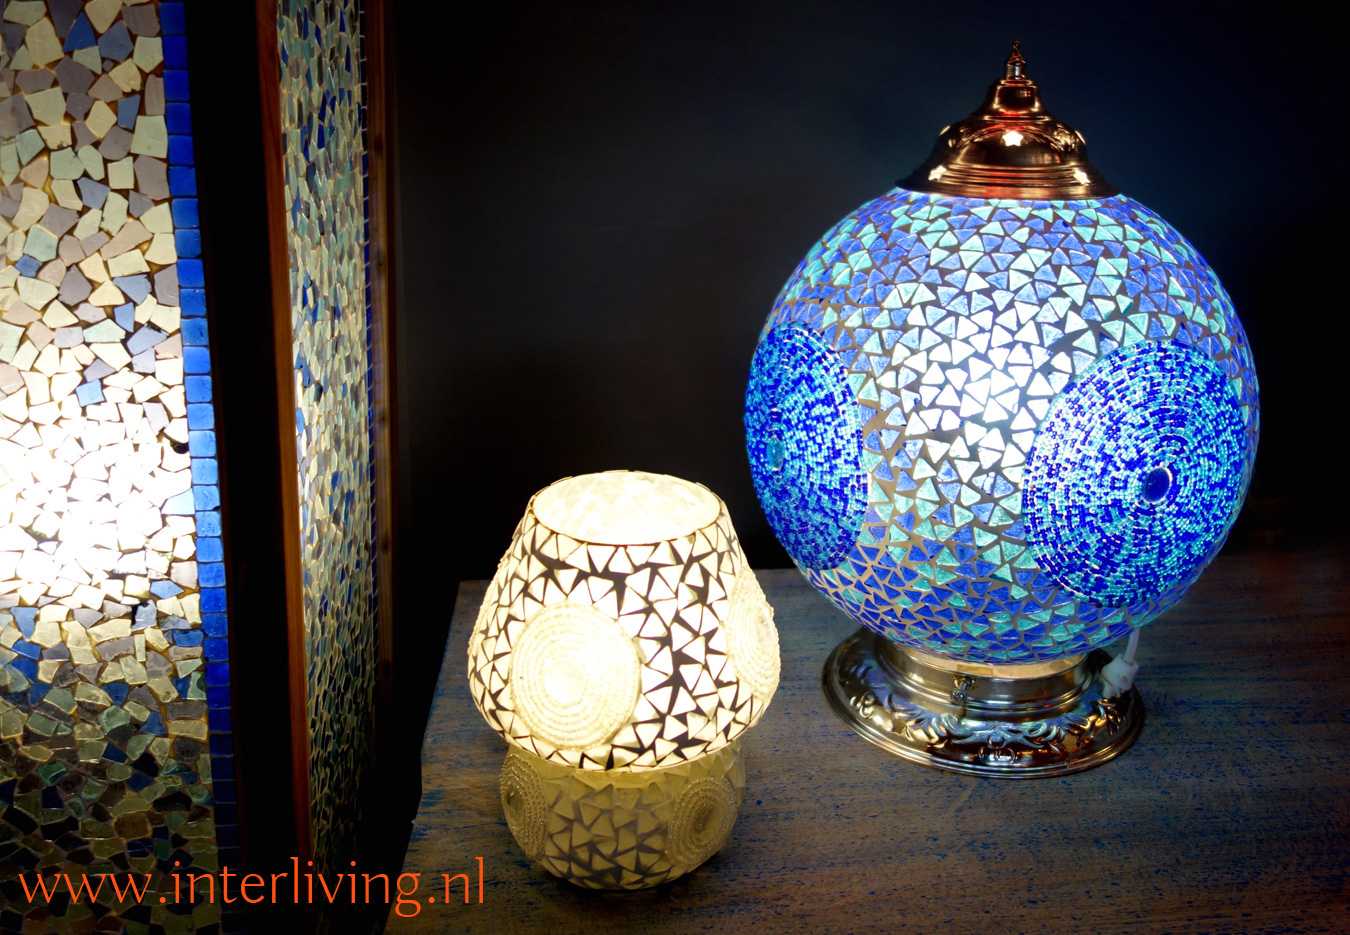 Verhogen Weg huis Lyrisch tafellampen van glasmozaïek, kralen en cement in kleurrijke designs